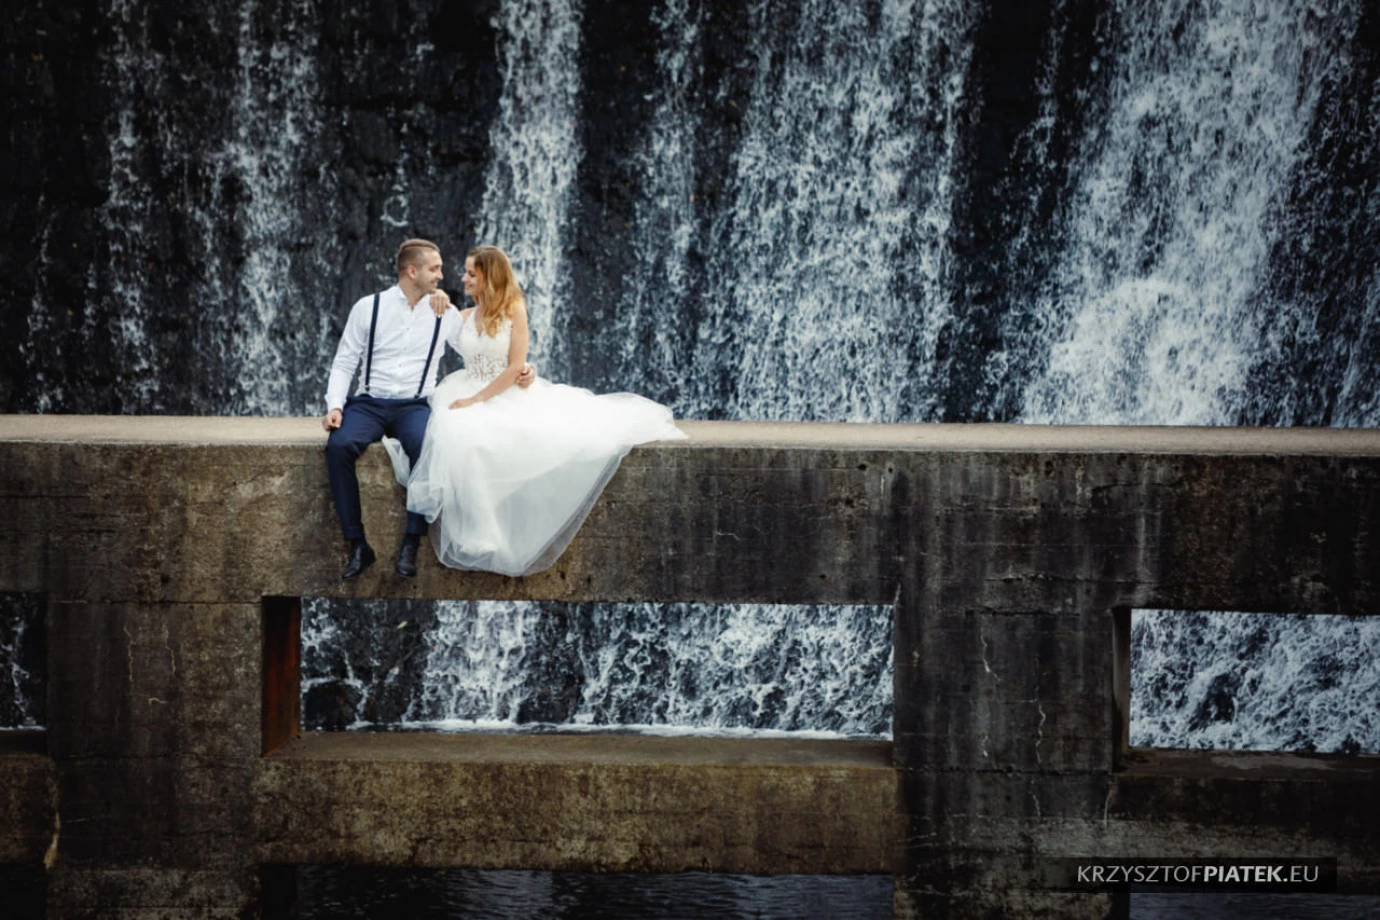 zdjęcia katowice fotograf krzysztof-piatek portfolio zdjecia slubne inspiracje wesele plener slubny